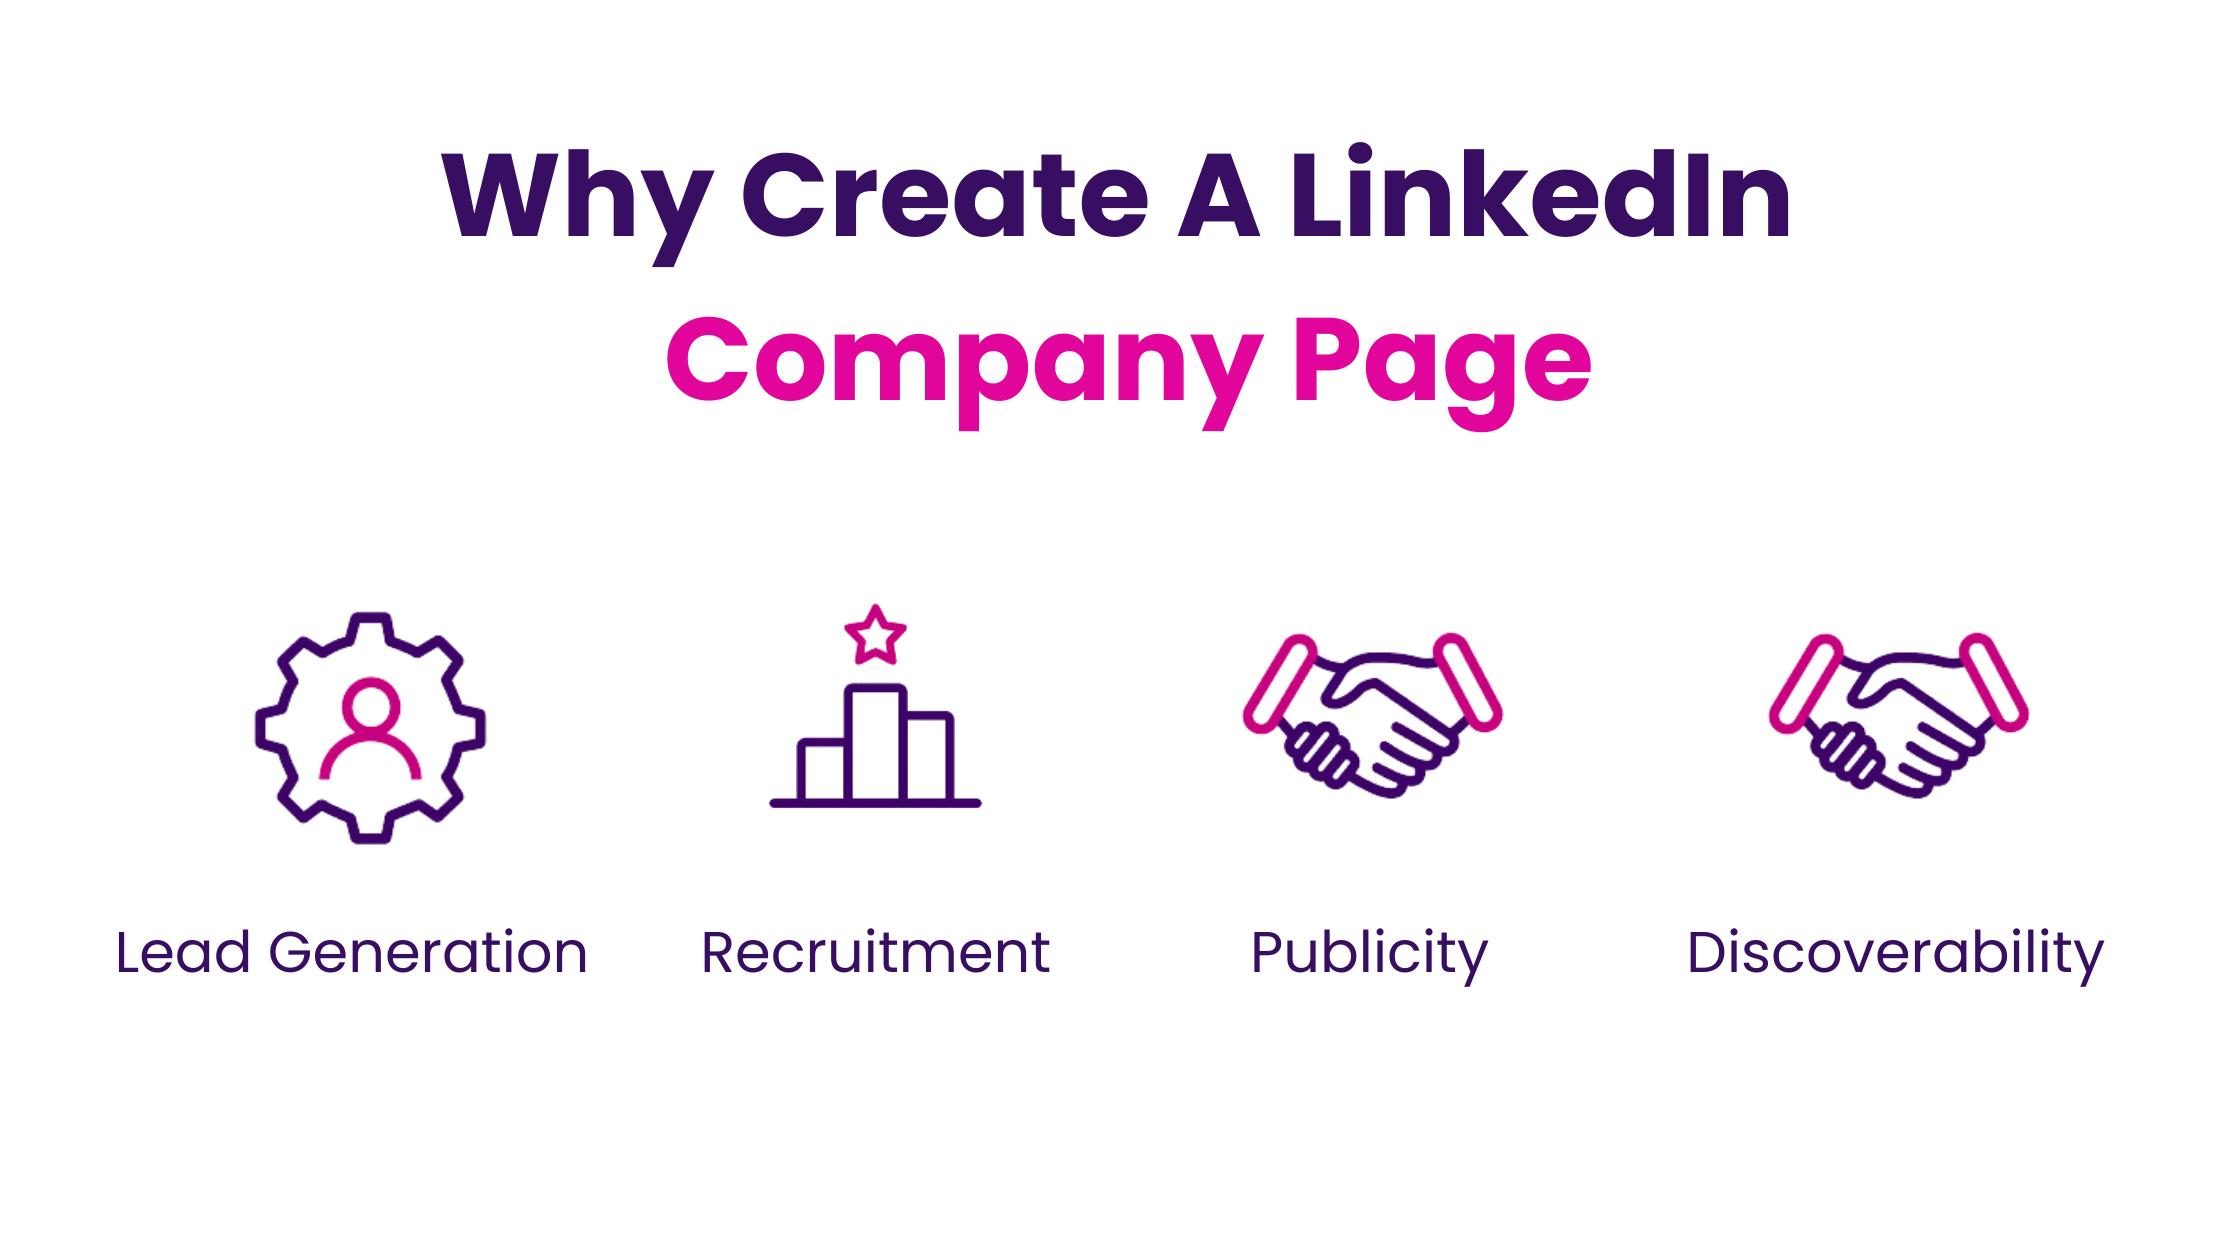 Why Create A LinkedIn Company Page